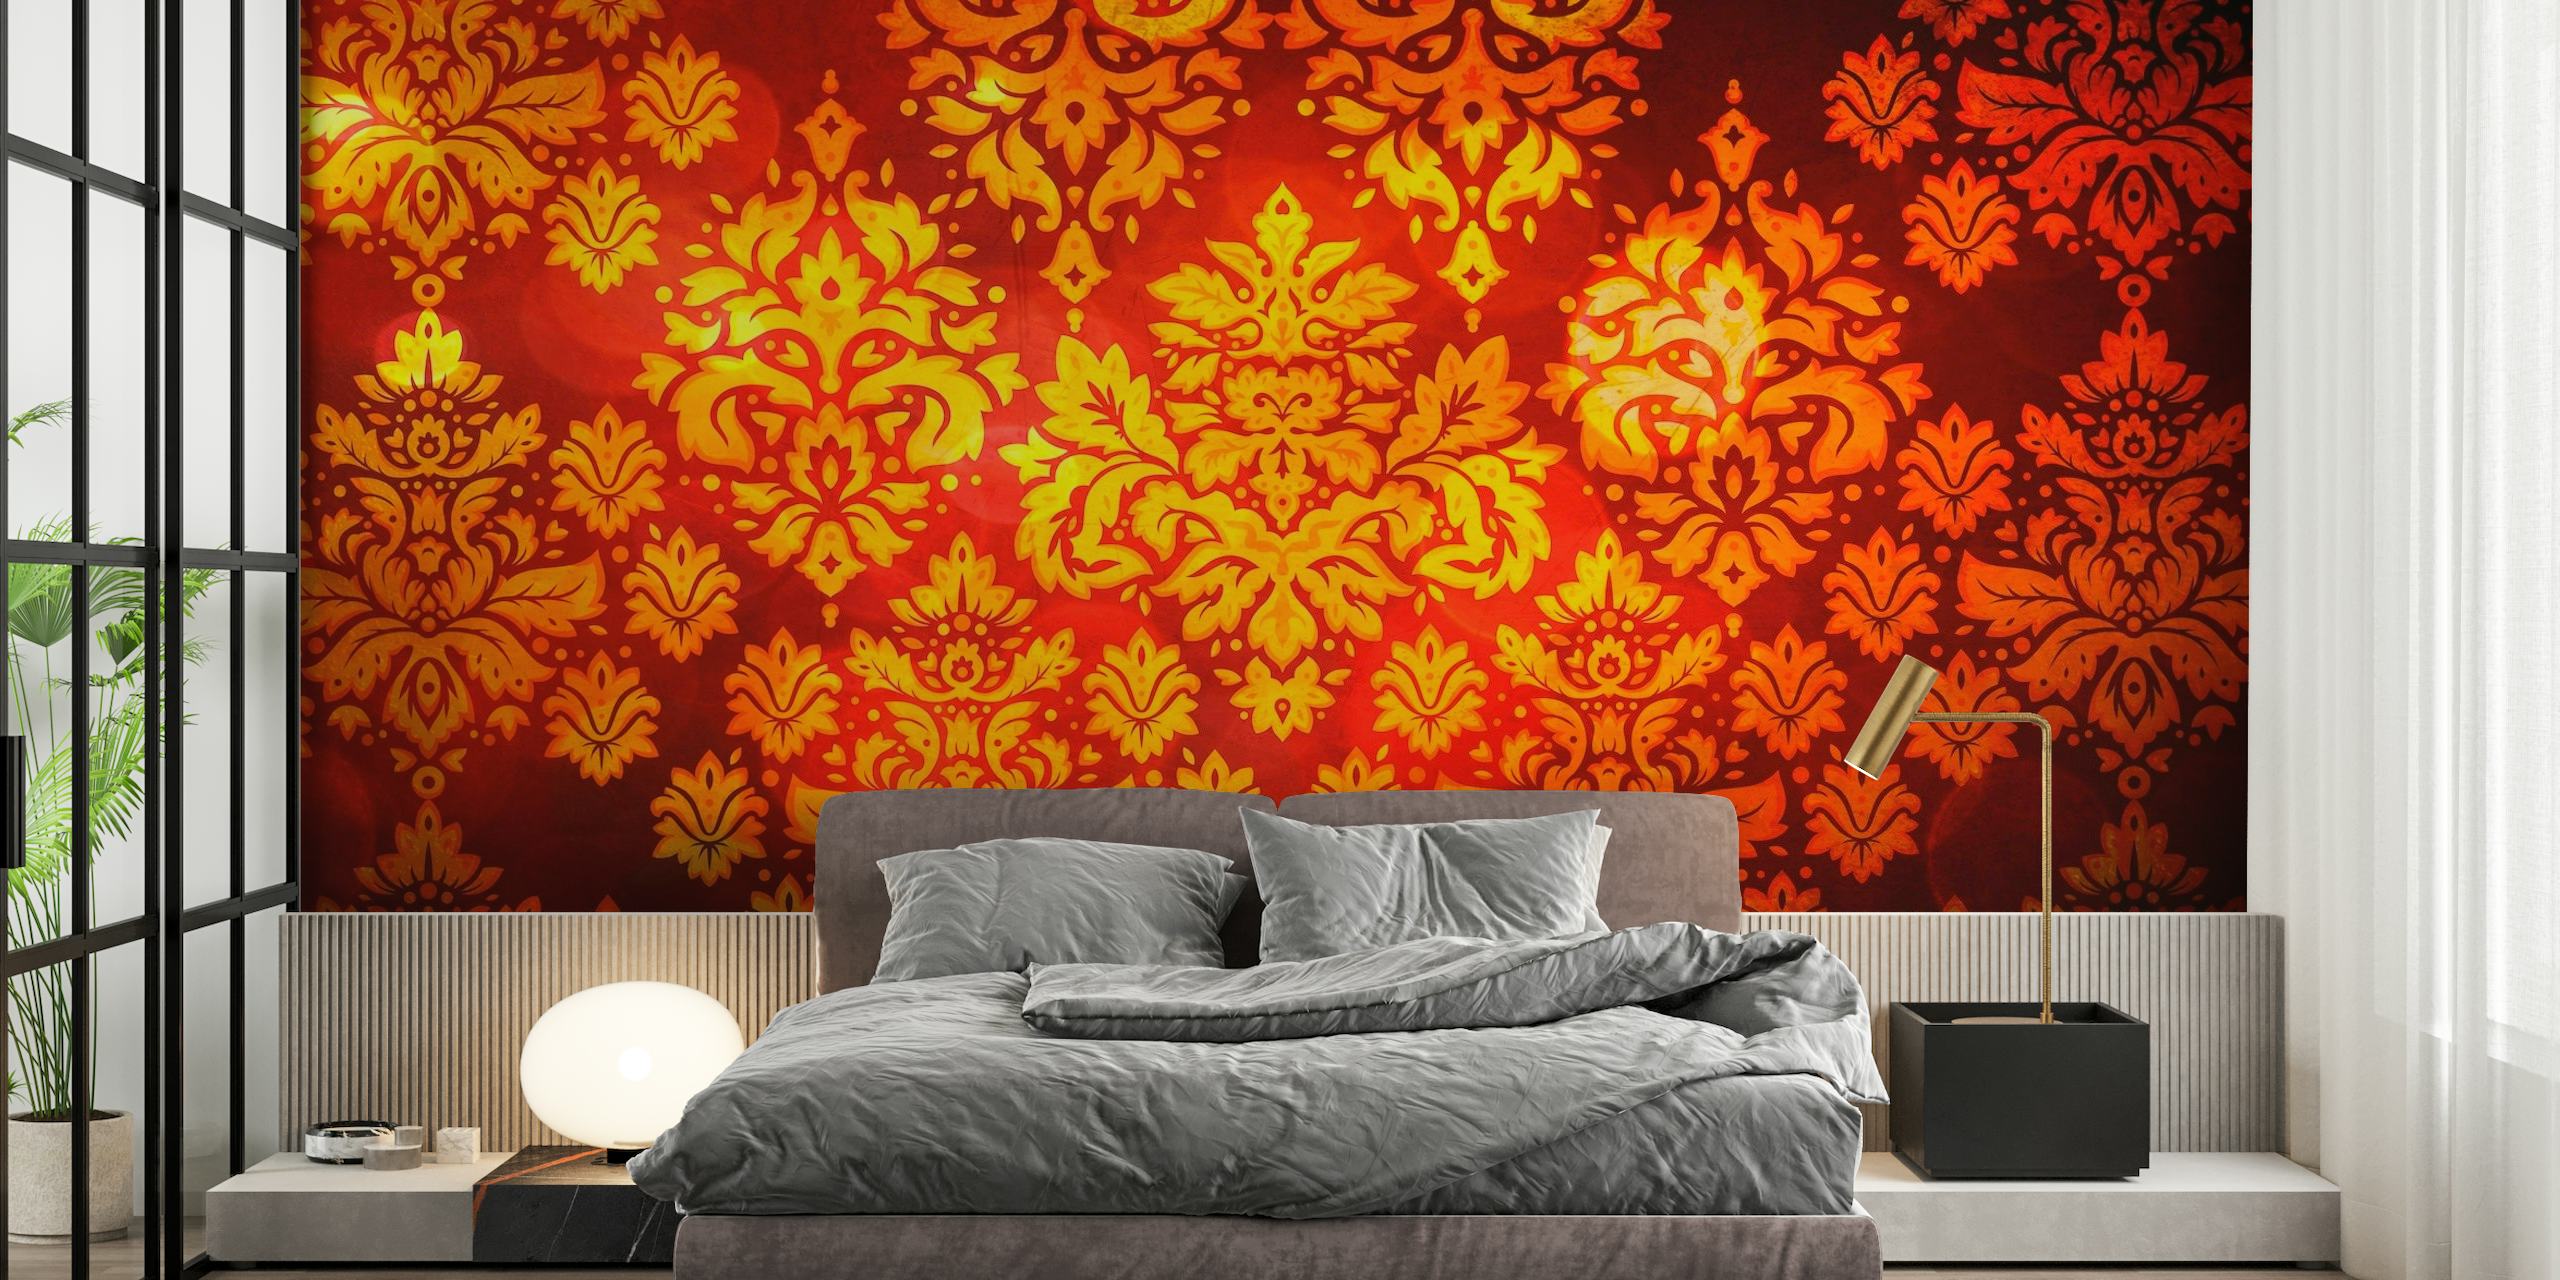 Elegant veggmaleri med rødt og gull i damastmønster for en luksuriøs interiørdekor